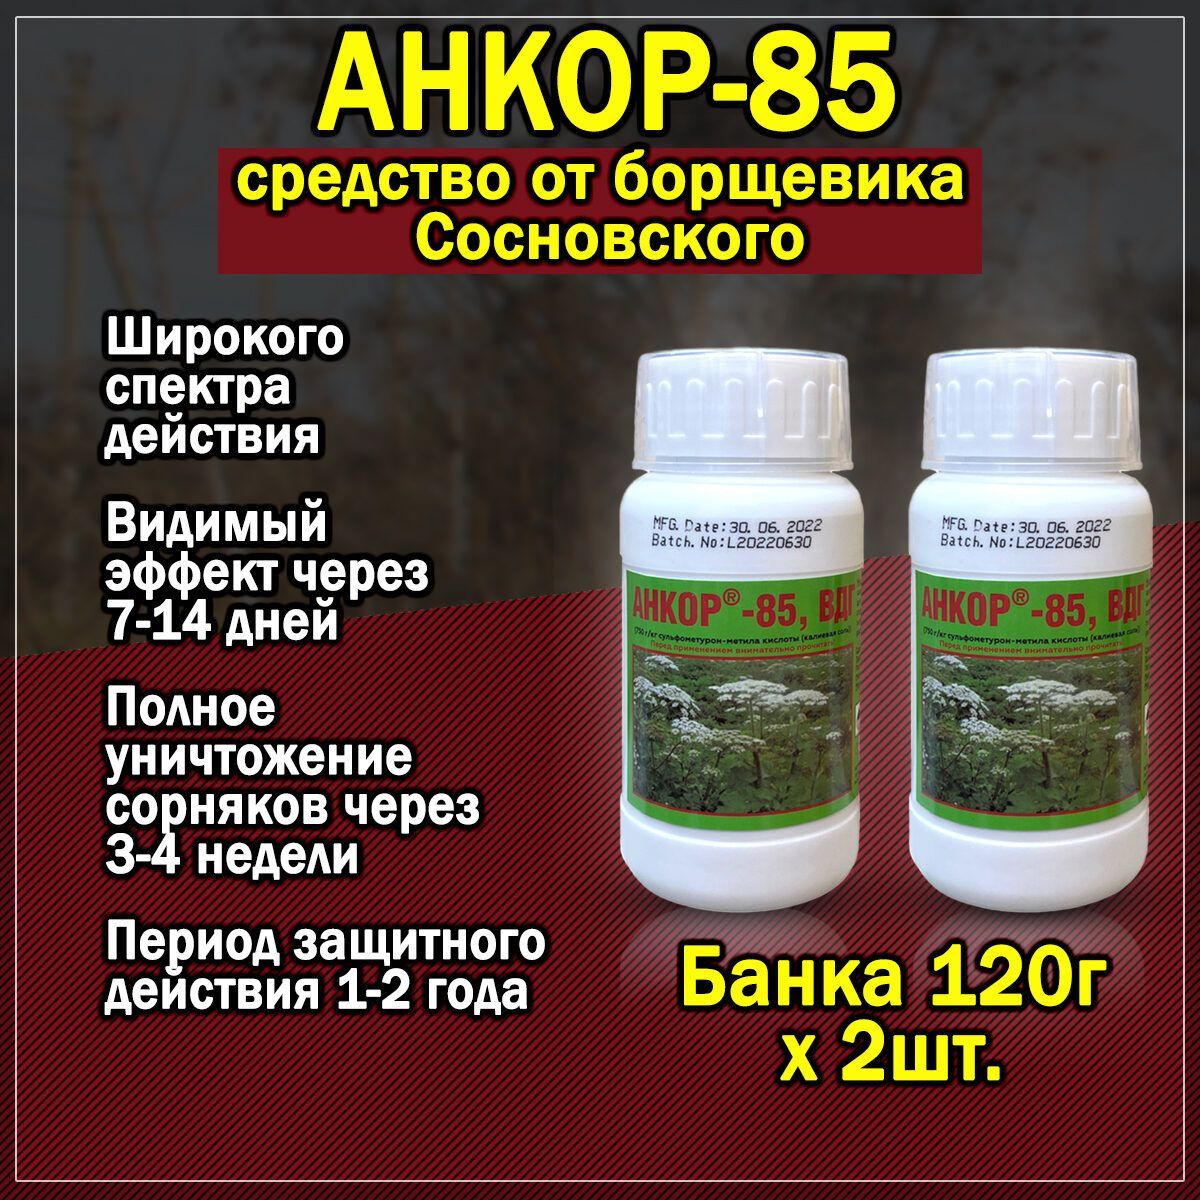 Анкор-852шт.по120гр.-гербициддляуничтожениясорняков,борщевикаСосновского,нежелательнойрастительностиидр.